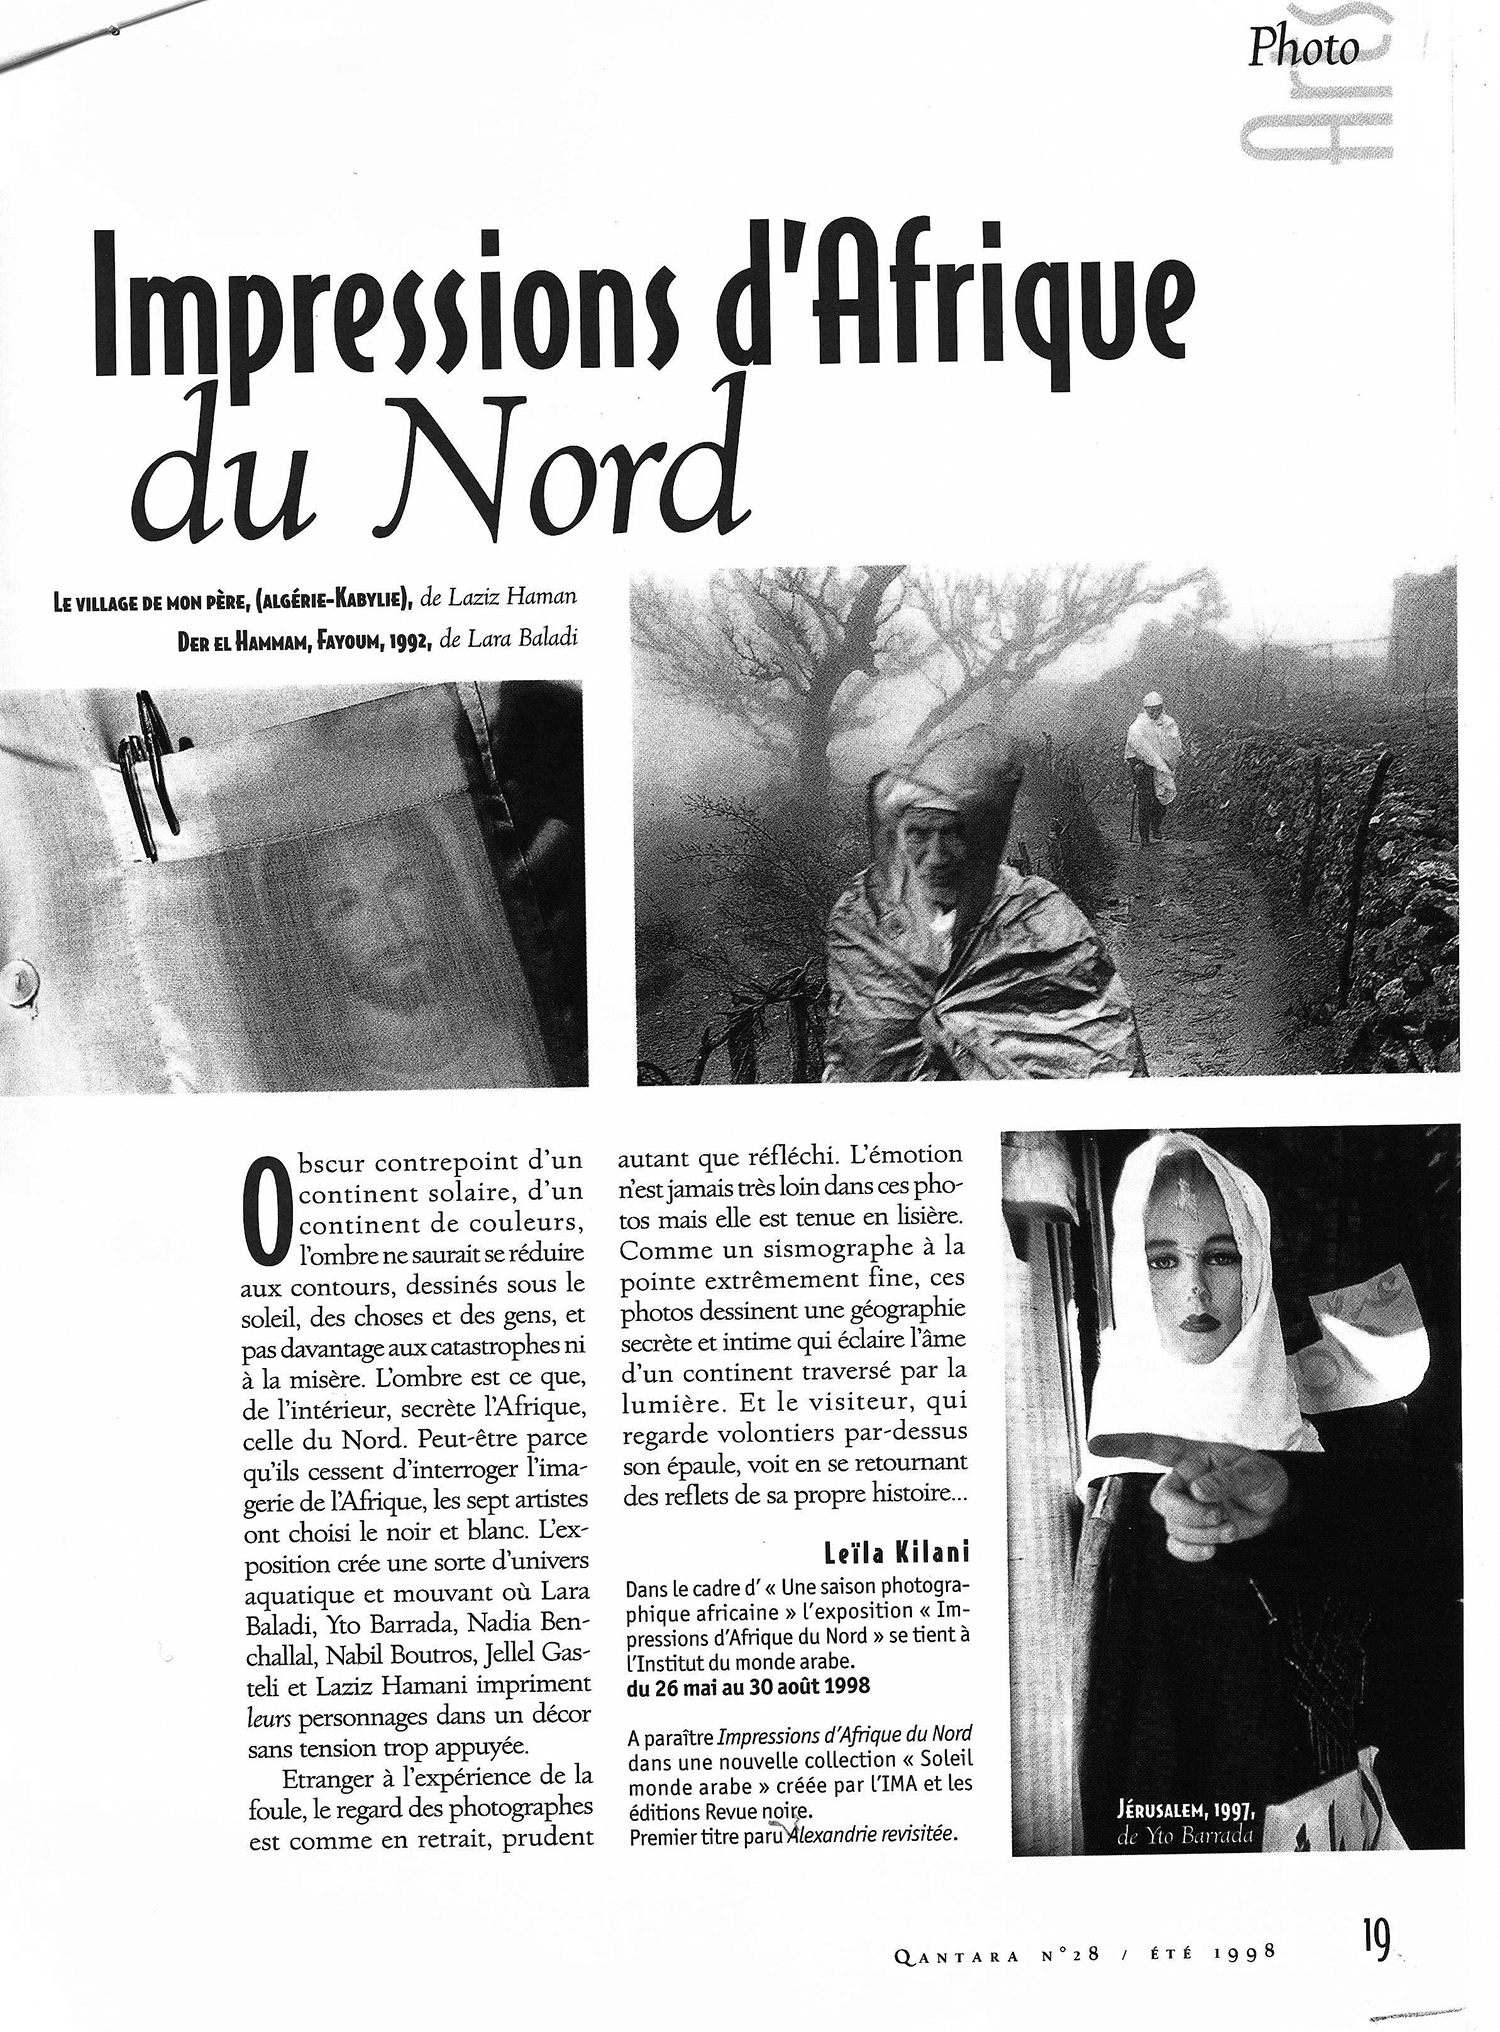 REVUE NOIRE revue de presse: Qantara juin 1998 par Leïla Kilani. Impressions d'Afrique du Nord, exposition à l'IMA et livre Revue Noire